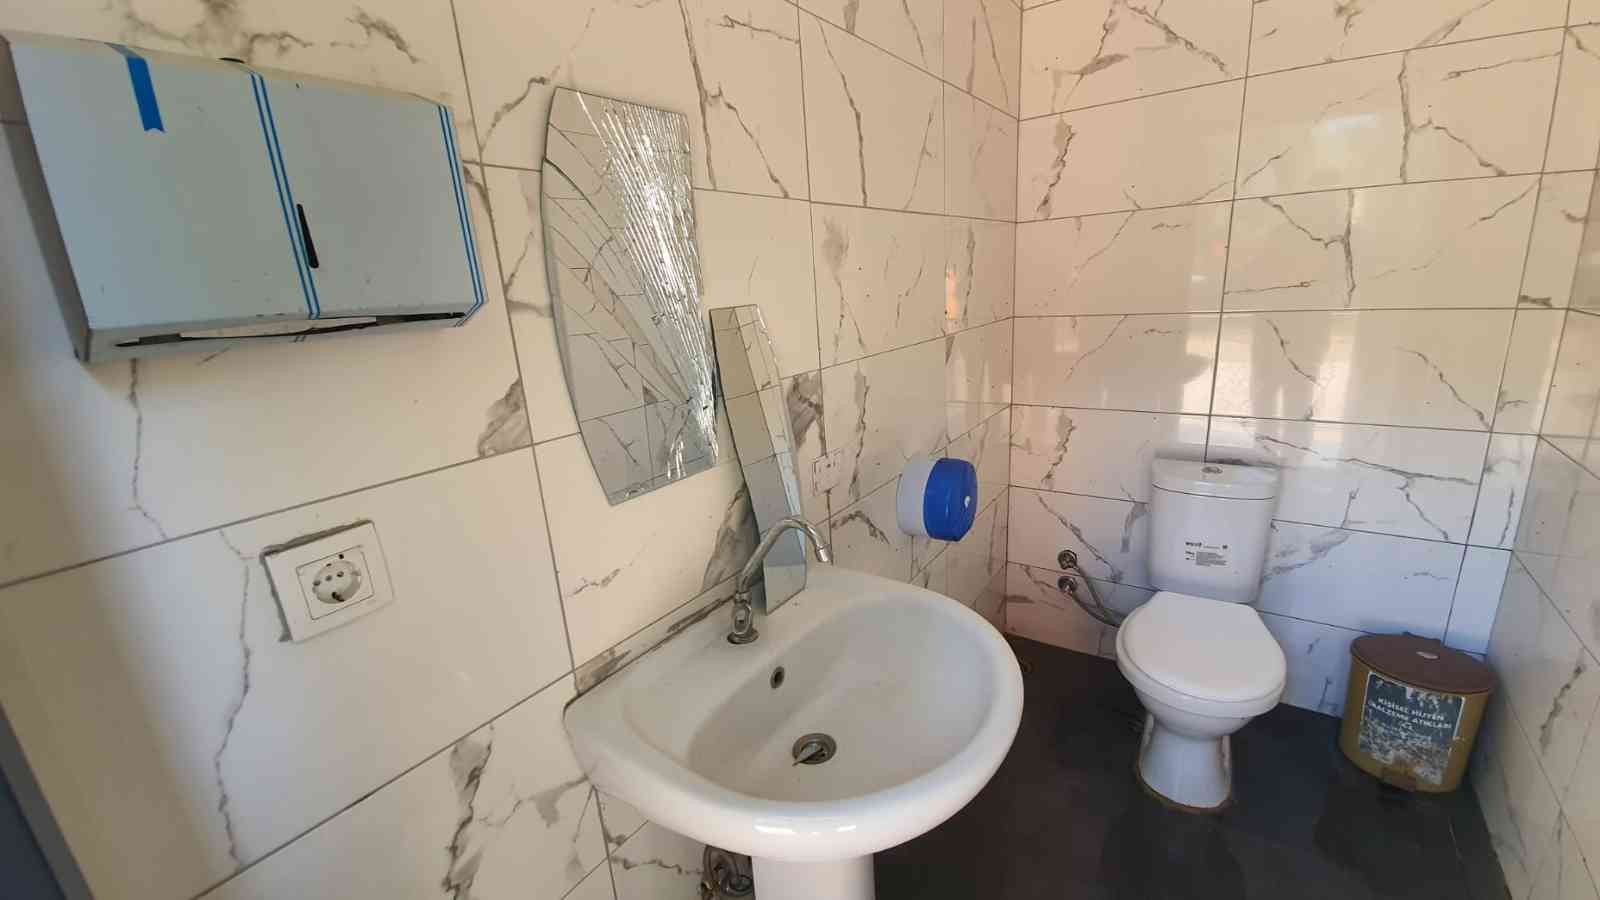 Tarsus'taki tuvaletlere 2 ay içerisinde üçüncü saldırı 